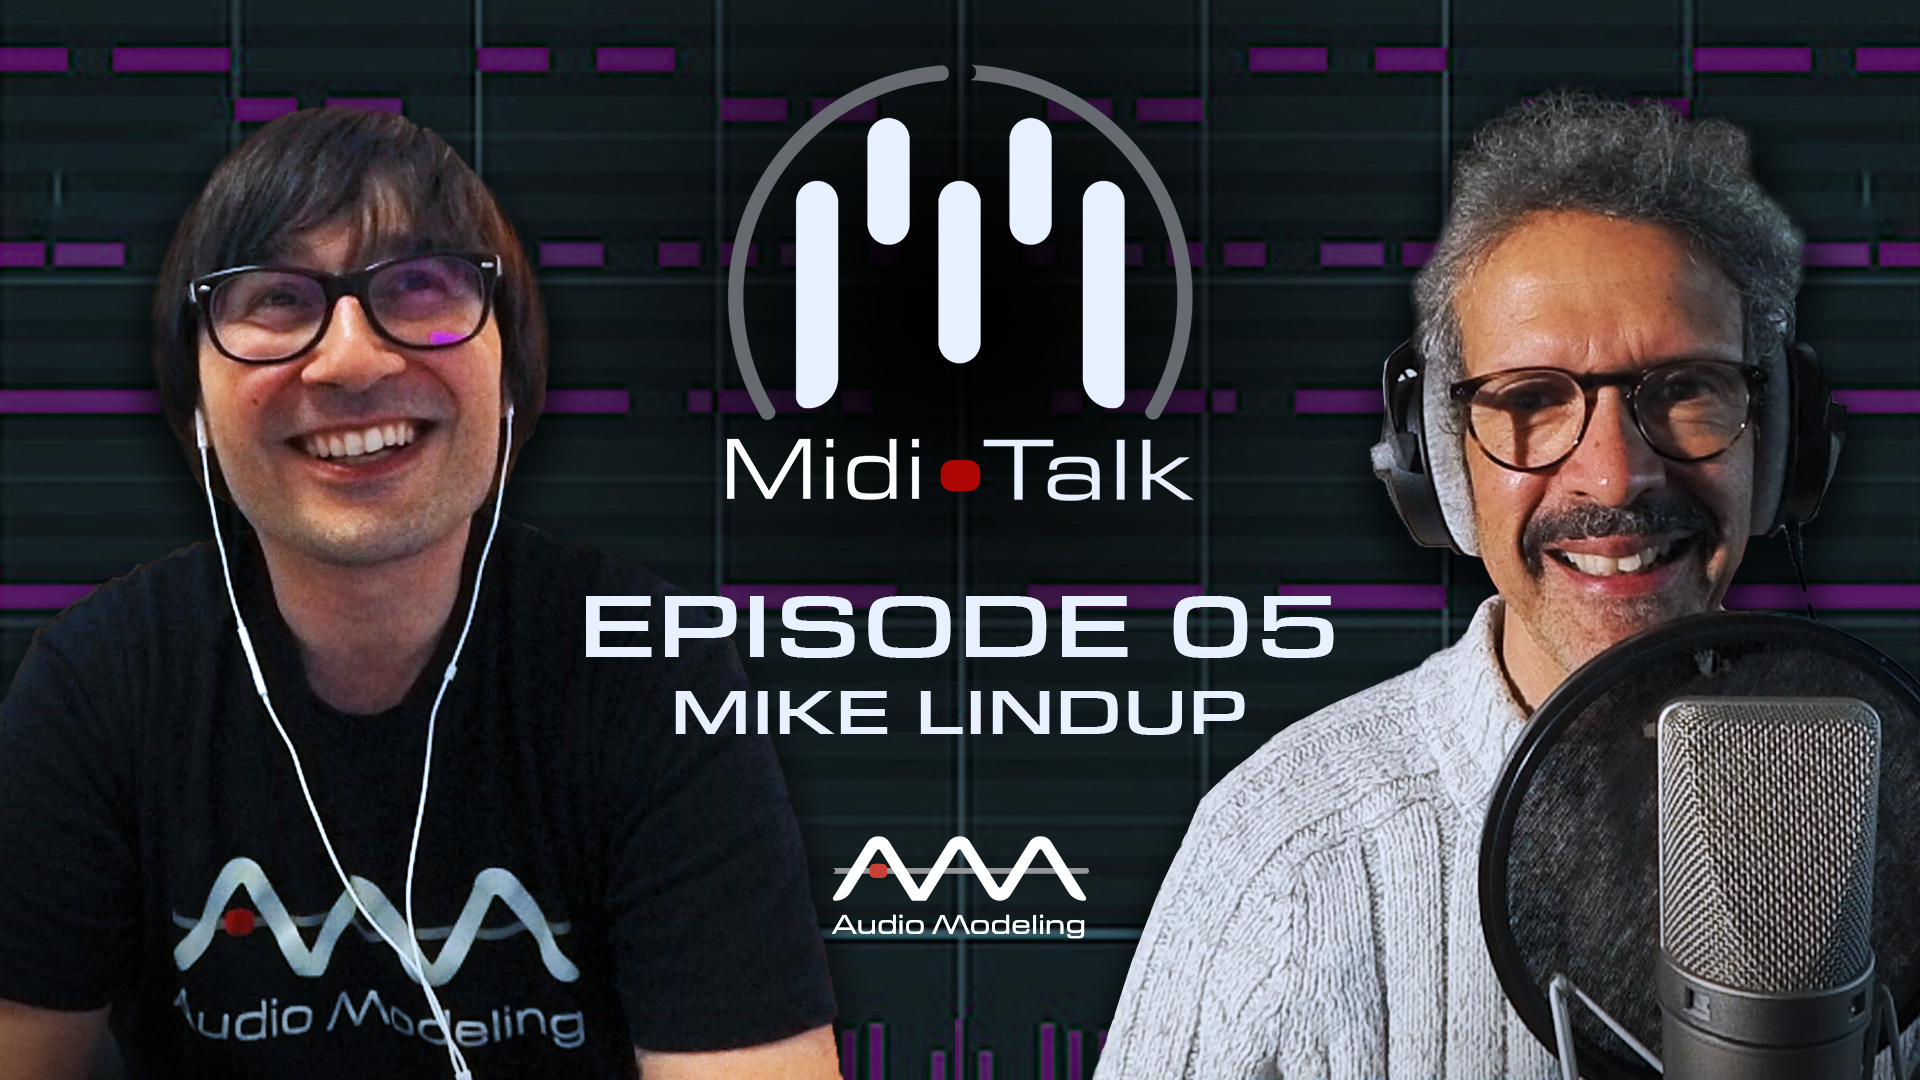 Midi Talk 05 - Mike Lindup